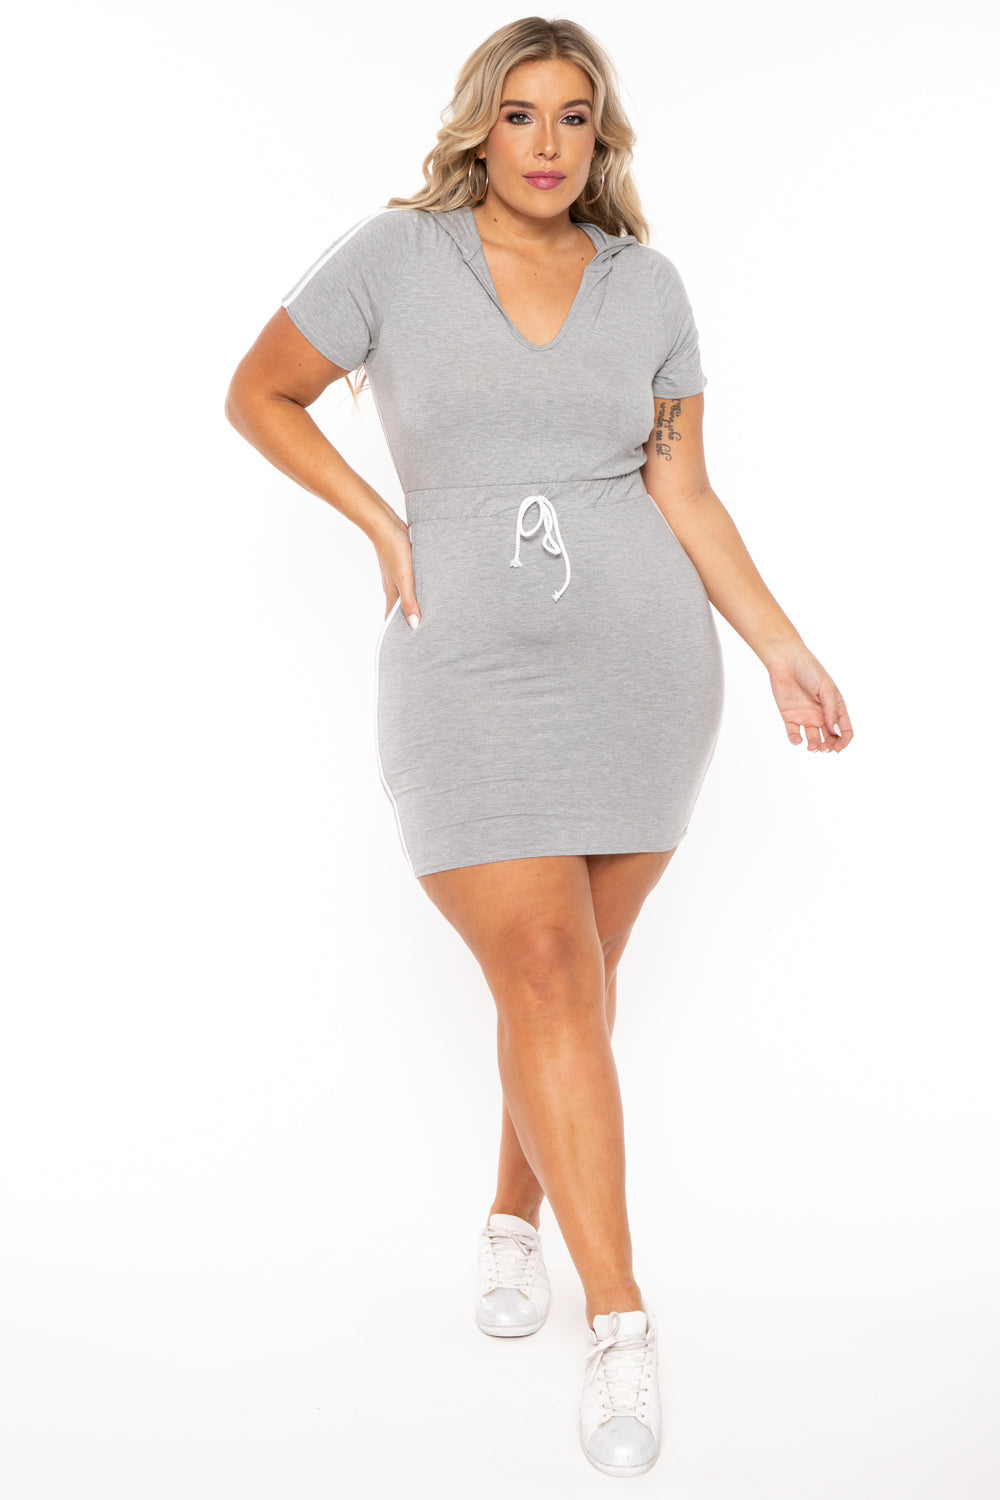 Curvy Sense Dresses 1X / Heather Grey Plus Size Sporty Varsity Stripe Hoodie Dress -  Heather Grey